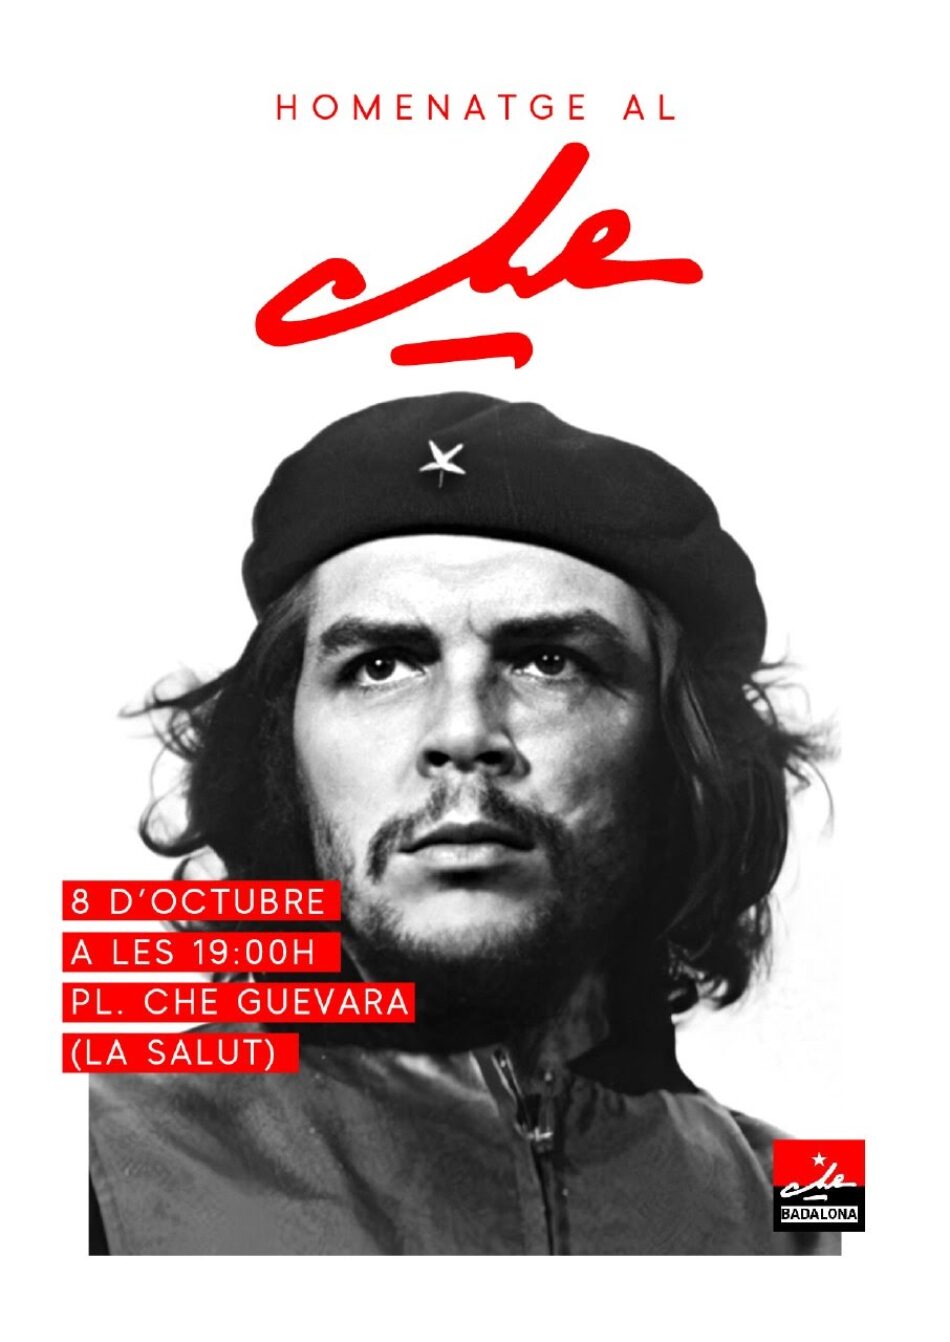 Tot a punt per l’homenatge a Ernesto Che Guevara a Badalona